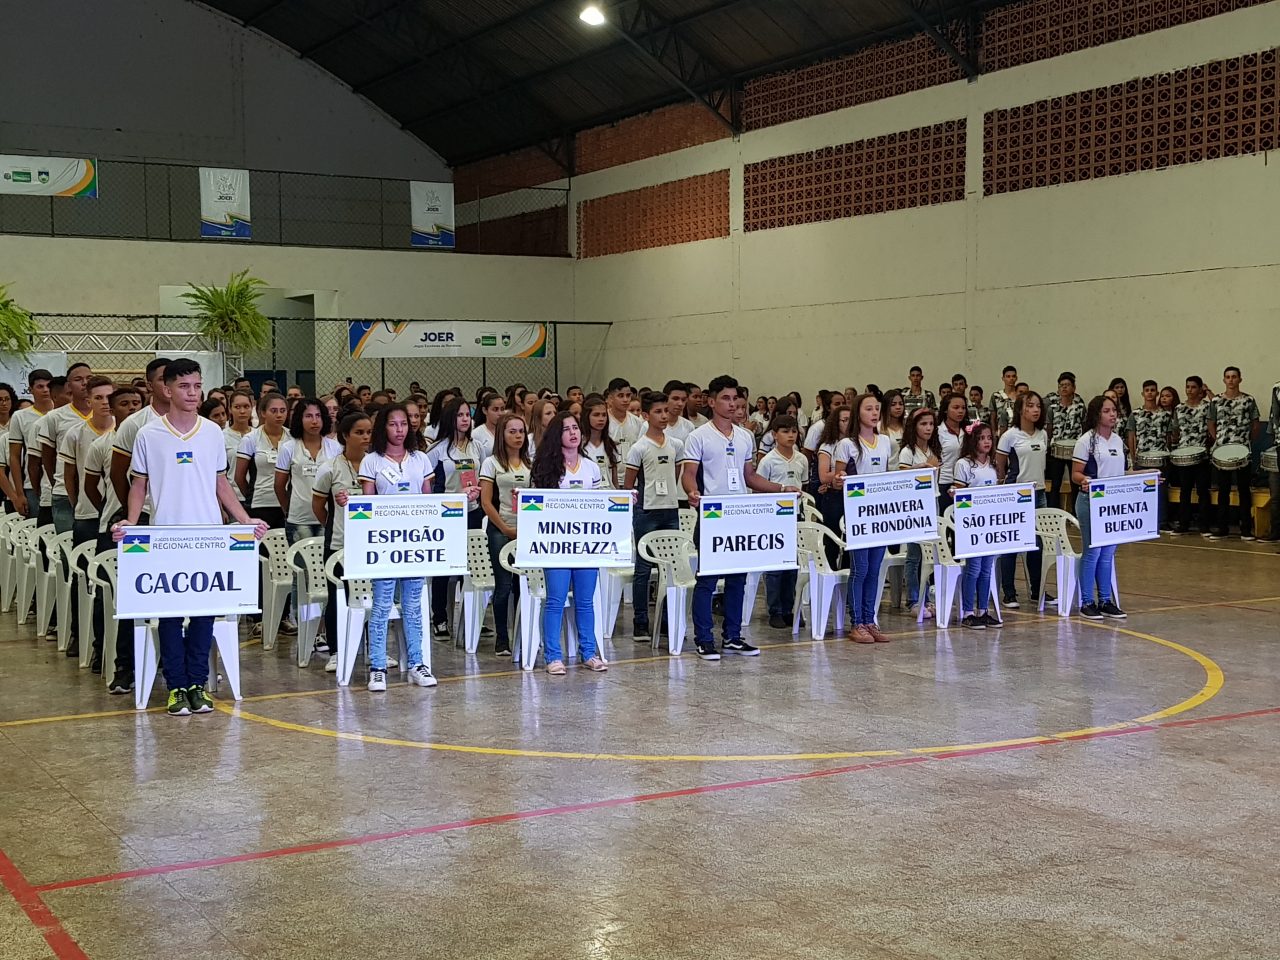 Educação - Equipe de Rondônia busca vaga para Mundial de Basquete na Grécia  - Governo do Estado de Rondônia - Governo do Estado de Rondônia